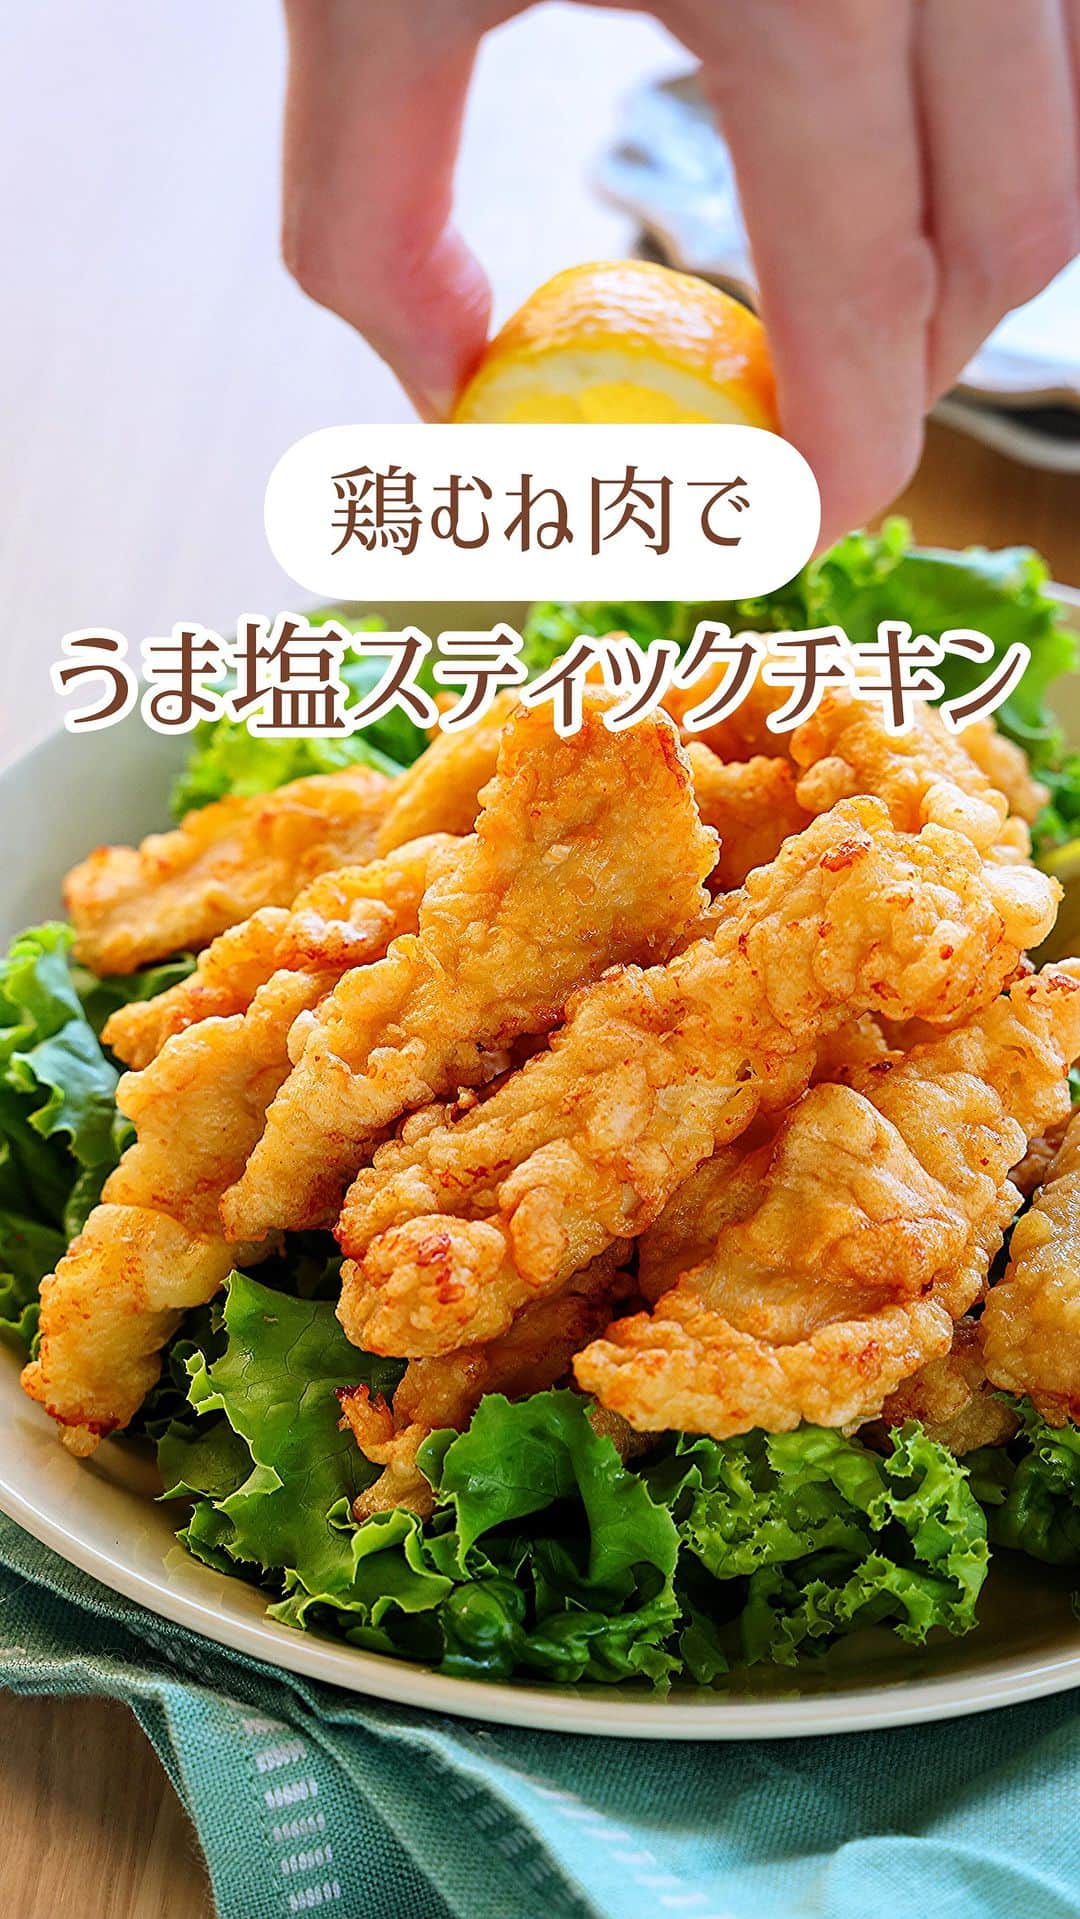 Mizuki【料理ブロガー・簡単レシピ】のインスタグラム：「・漬け込みなしですぐでき💕 ⁡ ［#レシピ ］ ーーーーーーーーーーーー 鶏むね肉で！ うま塩スティックチキン ーーーーーーーーーーーー ⁡ ⁡ ⁡ おはようございます☺️ ⁡ 今日ご紹介させていただくのは 鶏むね肉のコスパおかず❣️ \ うま塩スティックチキン / ⁡ 先日(10/18)アップした ''コンソメ醤油スティックチキン''を 塩からあげ風にアレンジしました💕 ⁡ 作り方は全く同じ✨ 衣に味付けするから 下味＆漬け込みなしですぐできる😋 卵入りの衣はボリュームがあり カリッとサクふわ食感に仕上がりますよ〜❣️ ⁡ おかず、おつまみ、お弁当に よかったらお試しくださいね💗 ⁡ ⁡ ⁡ ⋱⋰ ⋱⋰ ⋱⋰ ⋱⋰ ⋱⋰ ⋱⋰ ⋱⋰ 📍簡単・時短・節約レシピ更新中  Threadsもこちらから▼ @mizuki_31cafe ⁡ 📍謎の暮らし＆変なライブ垢 @mizuki_kurashi ⋱⋰ ⋱⋰ ⋱⋰ ⋱⋰ ⋱⋰ ⋱⋰ ⋱⋰ ⁡ ⁡ ⁡ ＿＿＿＿＿＿＿＿＿＿＿＿＿＿＿＿＿＿＿ 【2〜3人分】 鶏むね肉...大1枚(300g) ⚫︎溶き卵...1個分 ⚫︎薄力粉...大3 ⚫︎片栗粉...大2 ⚫︎水...大1 ⚫︎塩...小1/2 ⚫︎鶏がらスープ...小1/3 ⚫︎にんにくチューブ...2cm サラダ油...適量 ⁡ 1.鶏肉は2cm角の棒状に切る。 2.ボウルで⚫︎を混ぜて衣を作り、1を加えてからめる。 3.フライパンに1cmの油を中火で熱し、2を返しながら色よく揚げ焼きにし、火が通ったら油を切る。 ￣￣￣￣￣￣￣￣￣￣￣￣￣￣￣￣￣￣￣ ⁡ ⁡ 《ポイント》 ♦︎鶏肉は皮ごと使用していますが、除いていただいてもOKです♩ ♦︎鶏肉に衣をたっぷりからめた状態で油に入れてください♩ ♦︎私はフライパンに一度に全量入れて揚げ焼きしています♩油の温度は170度を目安に、下がらないよう火加減に注意してください♩ ⁡ ⁡ ⁡ ⁡ ⁡ ⋱⋰ ⋱⋰ ⋱⋰ ⋱⋰ ⋱⋰ ⋱⋰ ⋱⋰  愛用している調理器具・器など   #楽天ROOMに載せてます ‎𐩢𐩺  (ハイライトから飛べます🕊️) ⋱⋰ ⋱⋰ ⋱⋰ ⋱⋰ ⋱⋰ ⋱⋰ ⋱⋰ ⁡ ⁡ ⁡ ⁡ ⁡ ✼••┈┈┈┈┈••✼••┈┈┈┈┈••✼ 今日のごはんこれに決まり！ ‎𓊆#Mizukiのレシピノート 500品𓊇 ✼••┈┈┈┈┈••✼••┈┈┈┈┈••✼ ⁡ ˗ˏˋ おかげさまで25万部突破 ˎˊ˗ 料理レシピ本大賞準大賞を受賞しました✨ ⁡ 6000点の中からレシピを厳選し まさかの【500レシピ掲載】 肉や魚のメインおかずはもちろん 副菜、丼、麺、スープ、お菓子 ハレの日のレシピ、鍋のレシピまで 全てこの一冊で完結 𓌉◯𓇋 (全国の書店・ネット書店で発売中) ⁡ ⁡ ⁡ ⁡ ⁡ ⁡ #うま塩スティックチキンm #スティックチキン #鶏むね肉 #鶏むね肉レシピ #塩からあげ #チキンスティック #からあげ #お弁当 #節約料理  #簡単料理  #時短料理 #mizukiレシピ  #時短レシピ #節約レシピ #簡単レシピ」